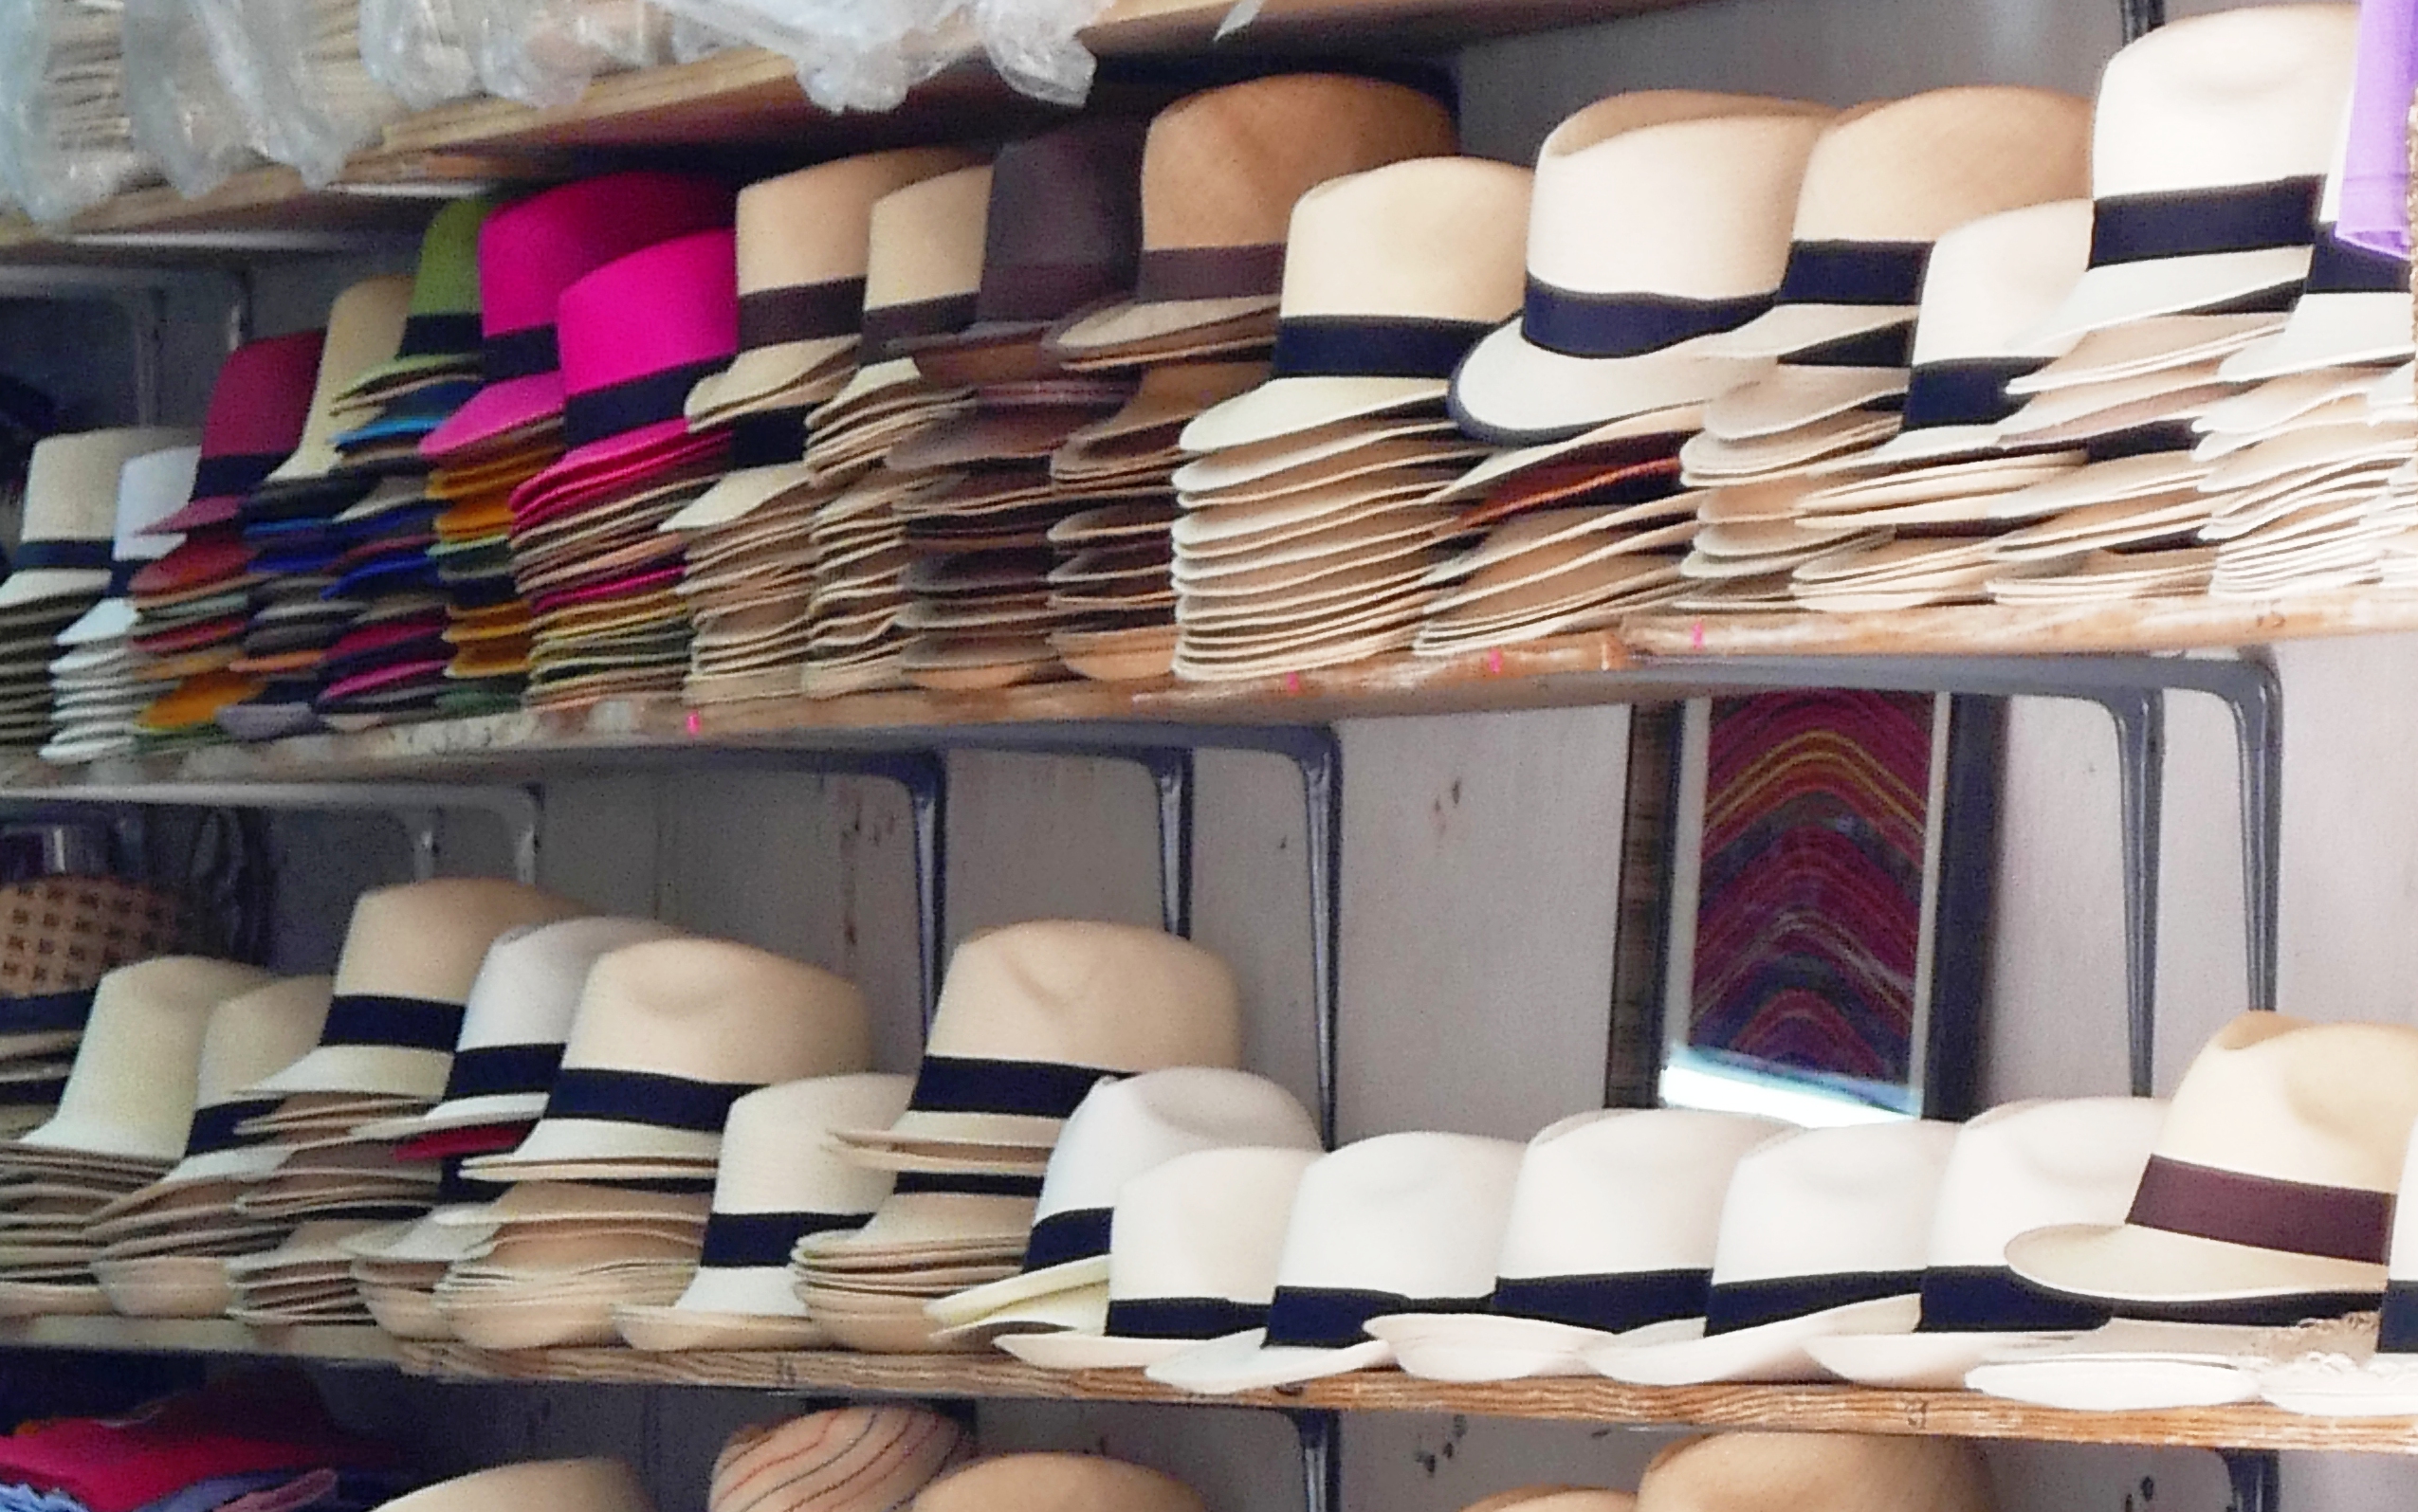 Les célèbres chapeaux panama - photo © Marc Rigole